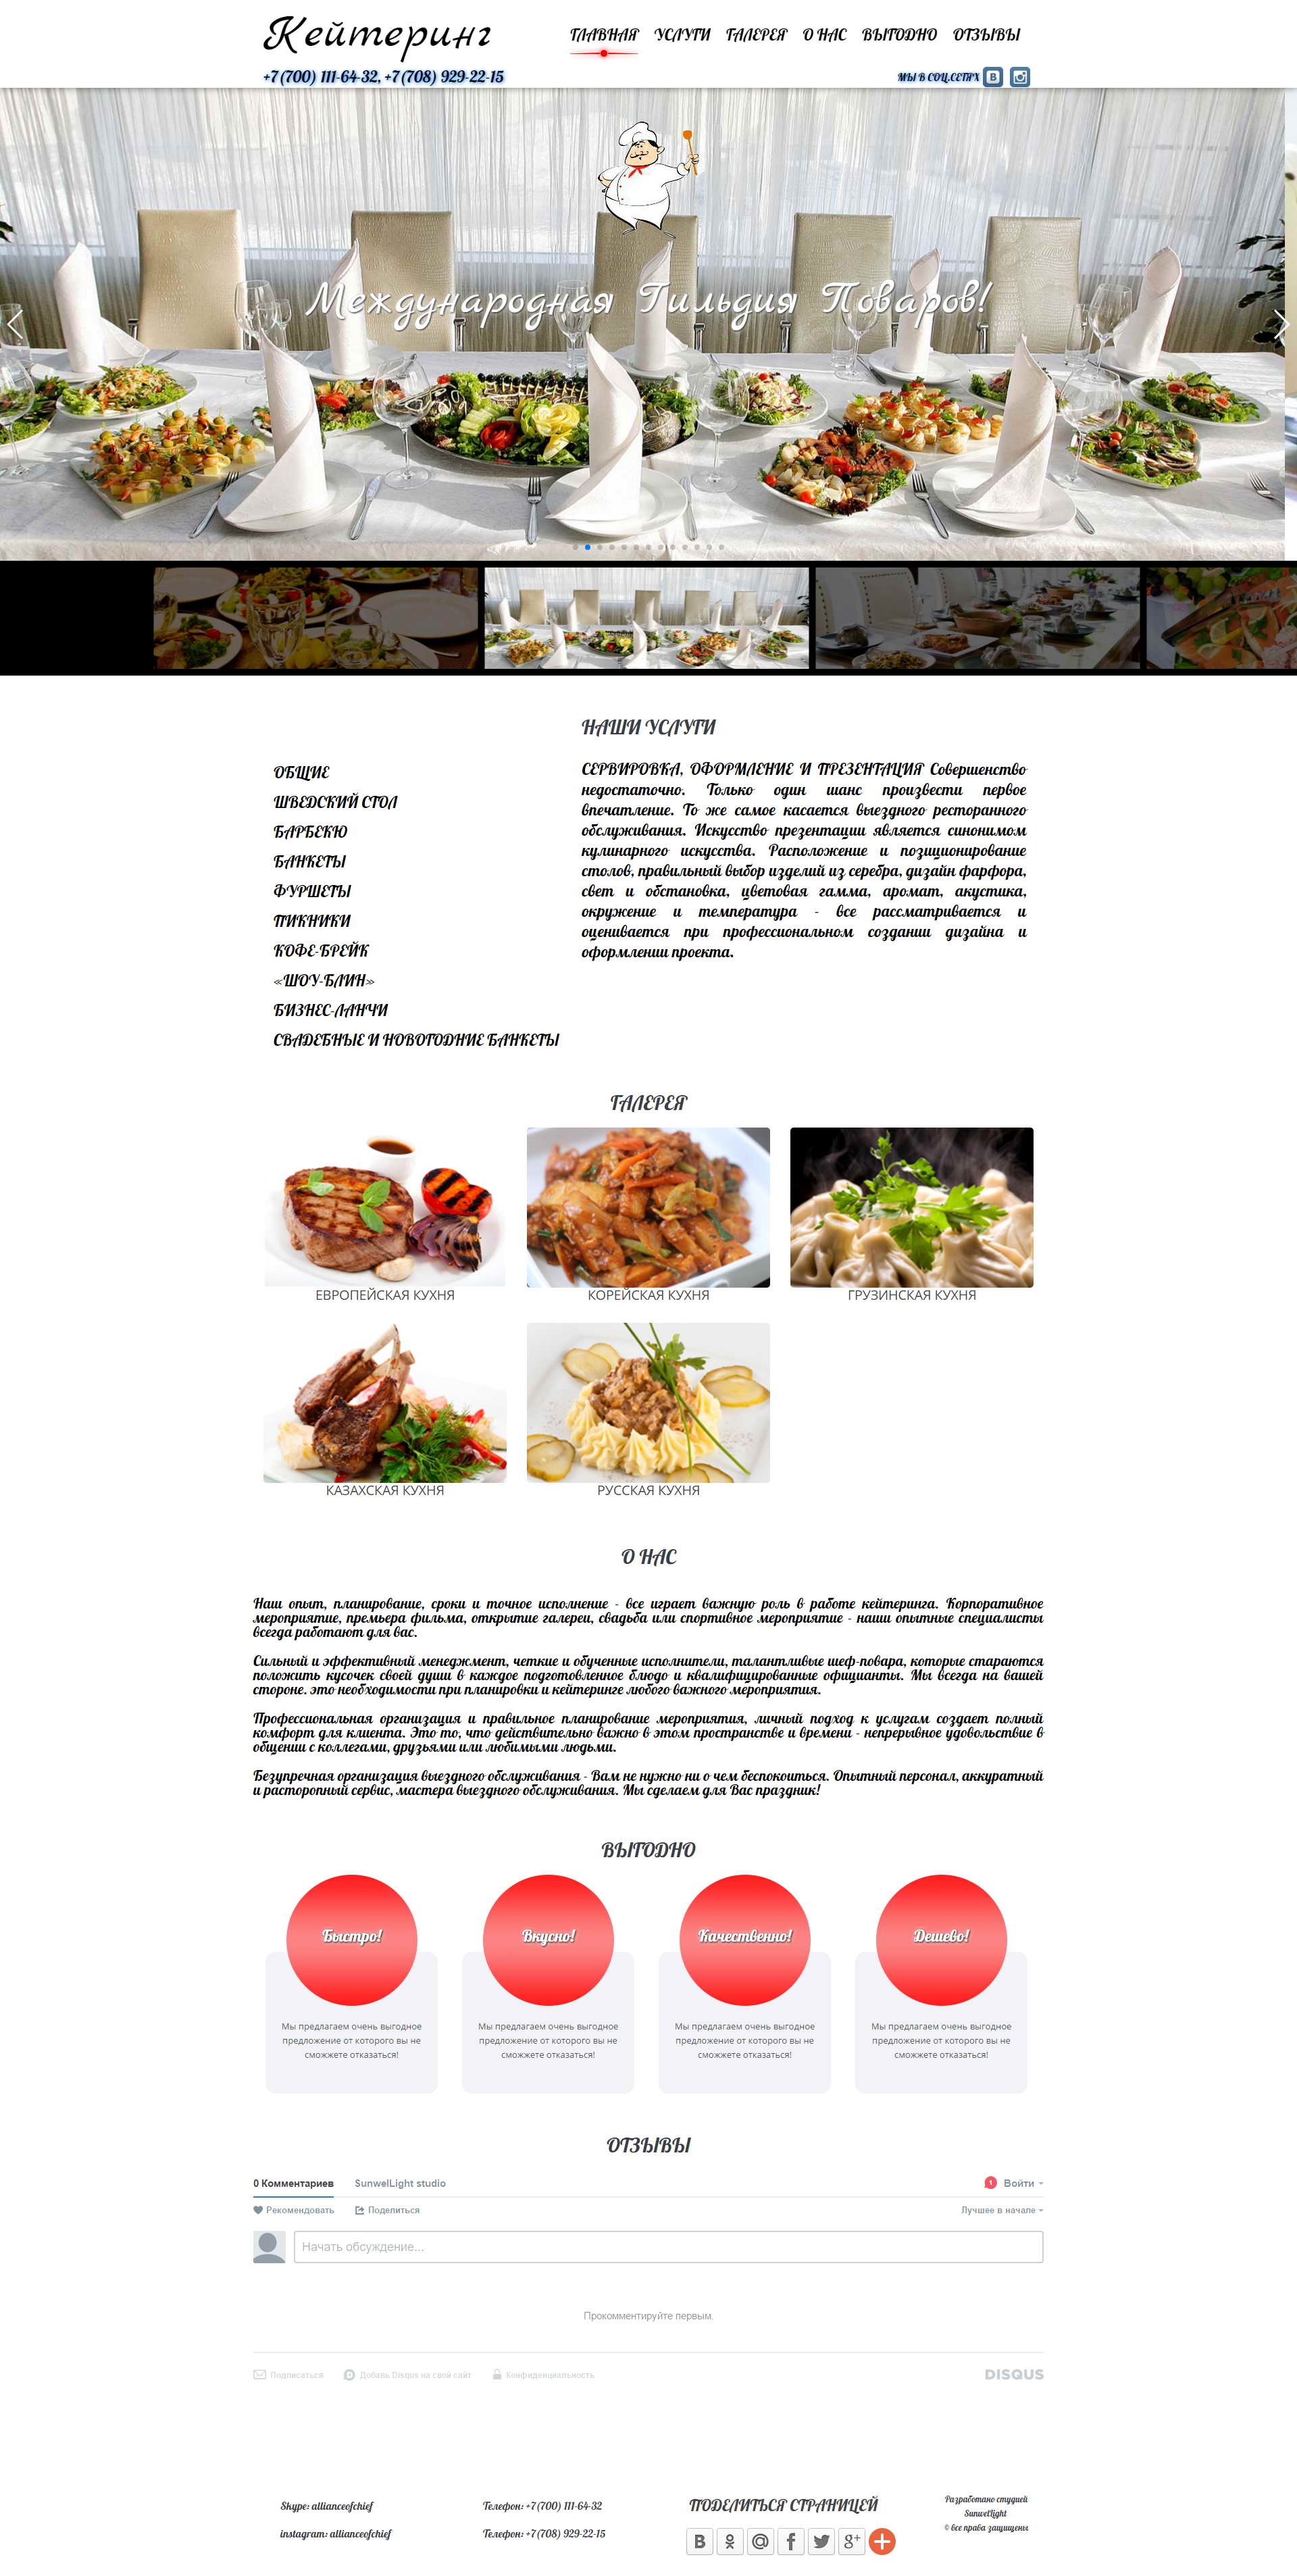 landing page разработанный для компании 'Международная гильдия поваров', предоставляющий услуги кейтеринга .